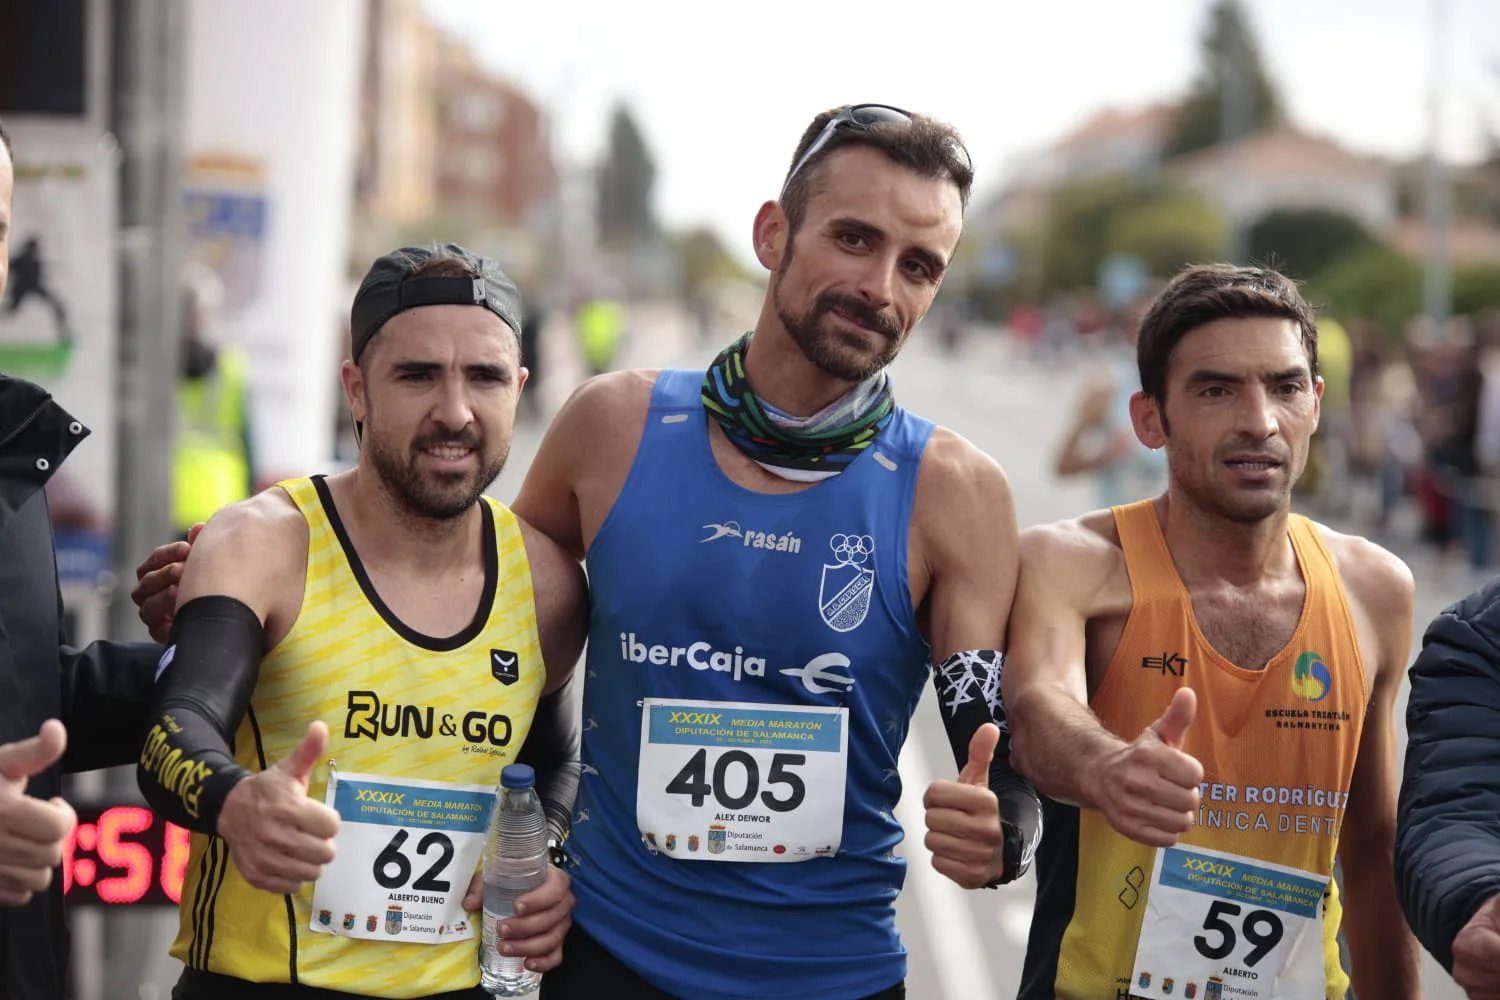 Día grande de atletismo en la Media Maratón de la Diputación